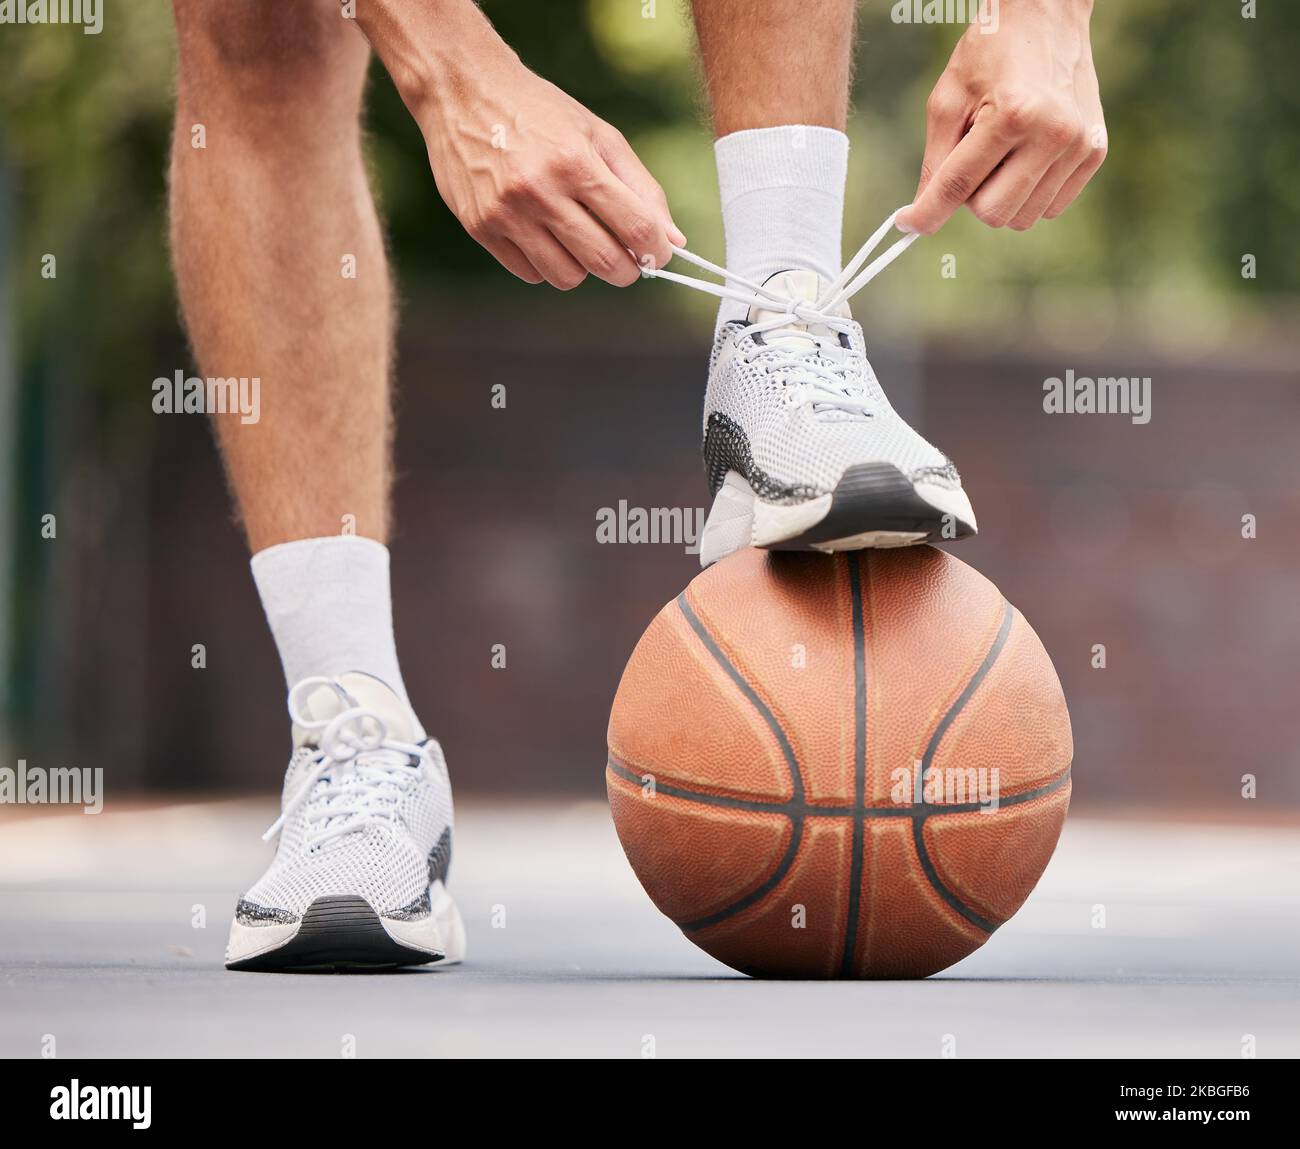 Basket-ball, athlète avec cordonnet, chaussures et sport sur terrain de basket-ball extérieur, fitness et motivation d'exercice. Homme, joueur de basket-ball et prêt pour Banque D'Images